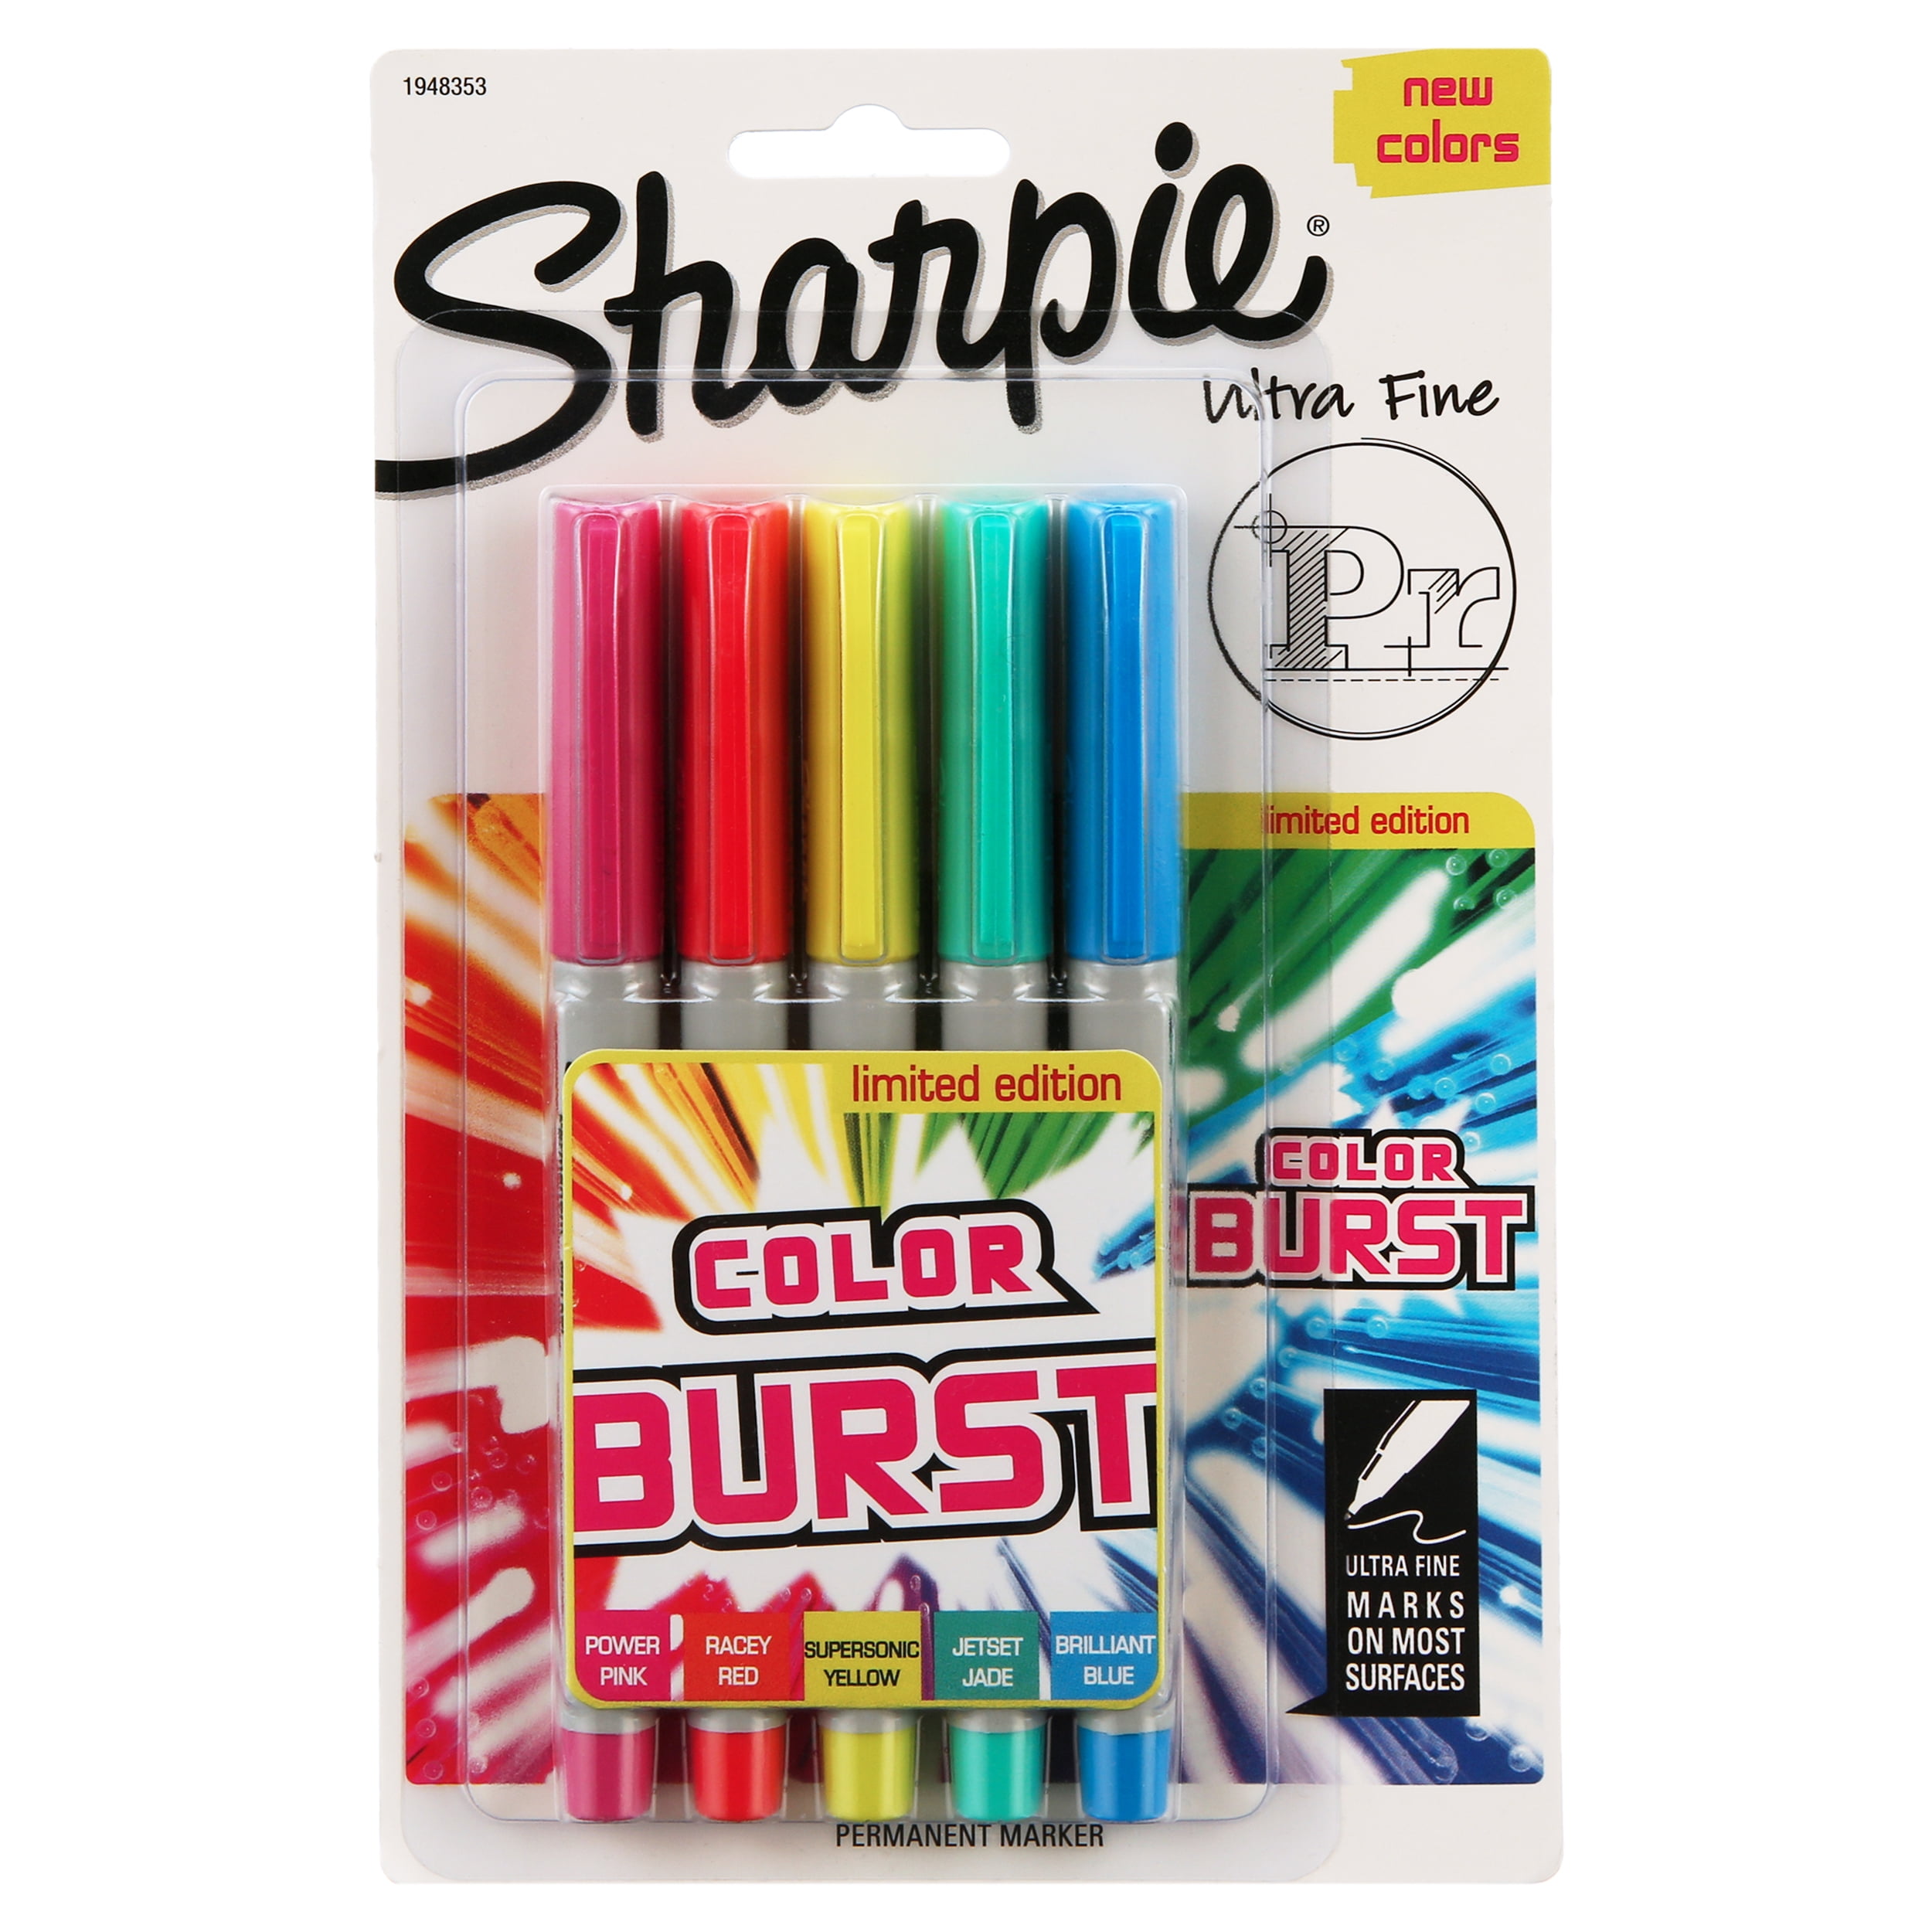 Sharpie Color Burst Ultra Fine Markers - Zerbee